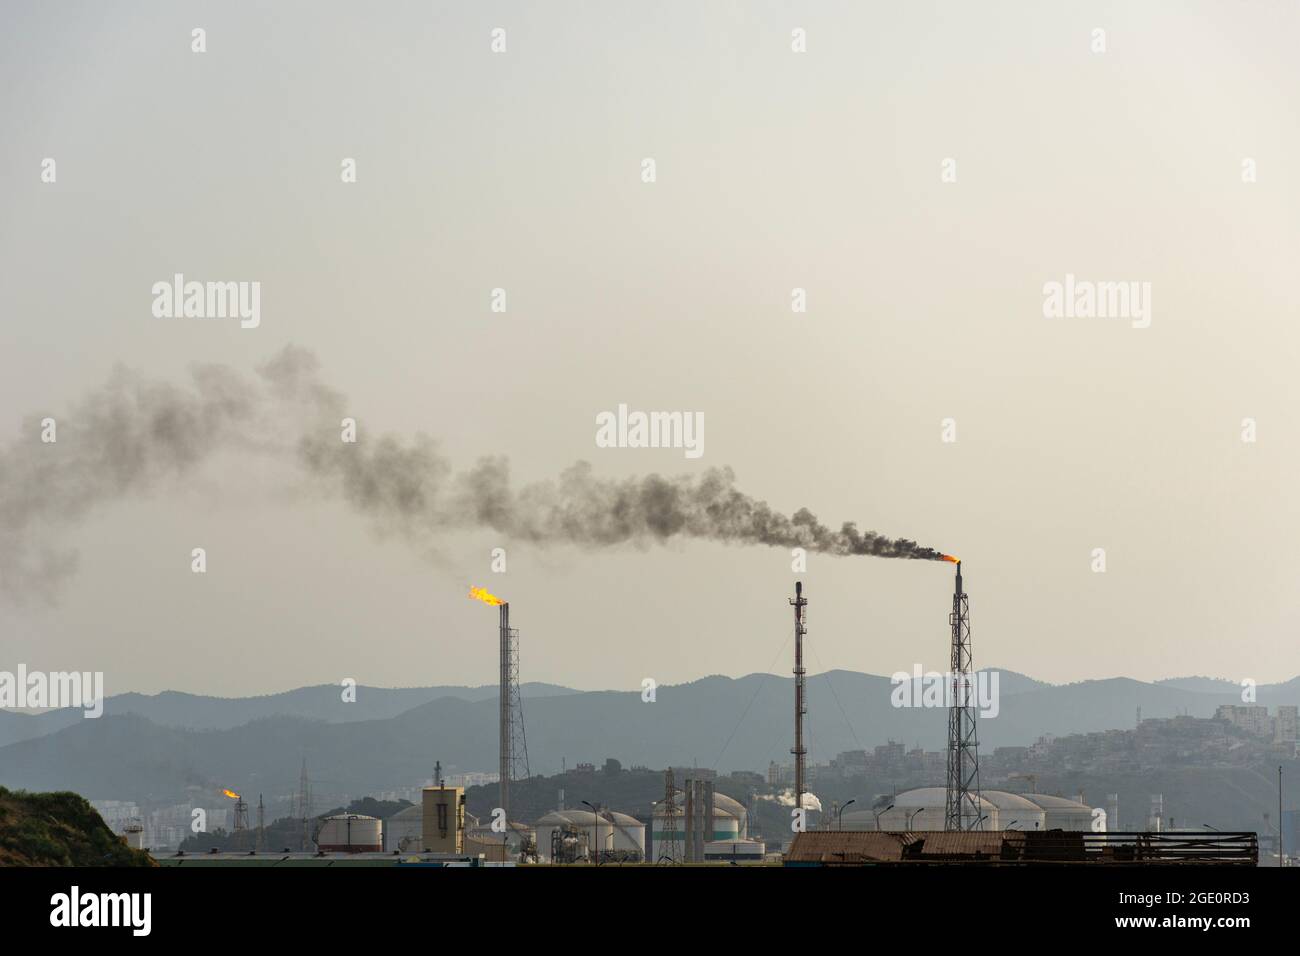 Incendie d'une torche à gaz dans une grande usine de raffinage de l'industrie pétrolière dans le nord de l'Algérie, raffinerie de pétrole à Skikda. Banque D'Images